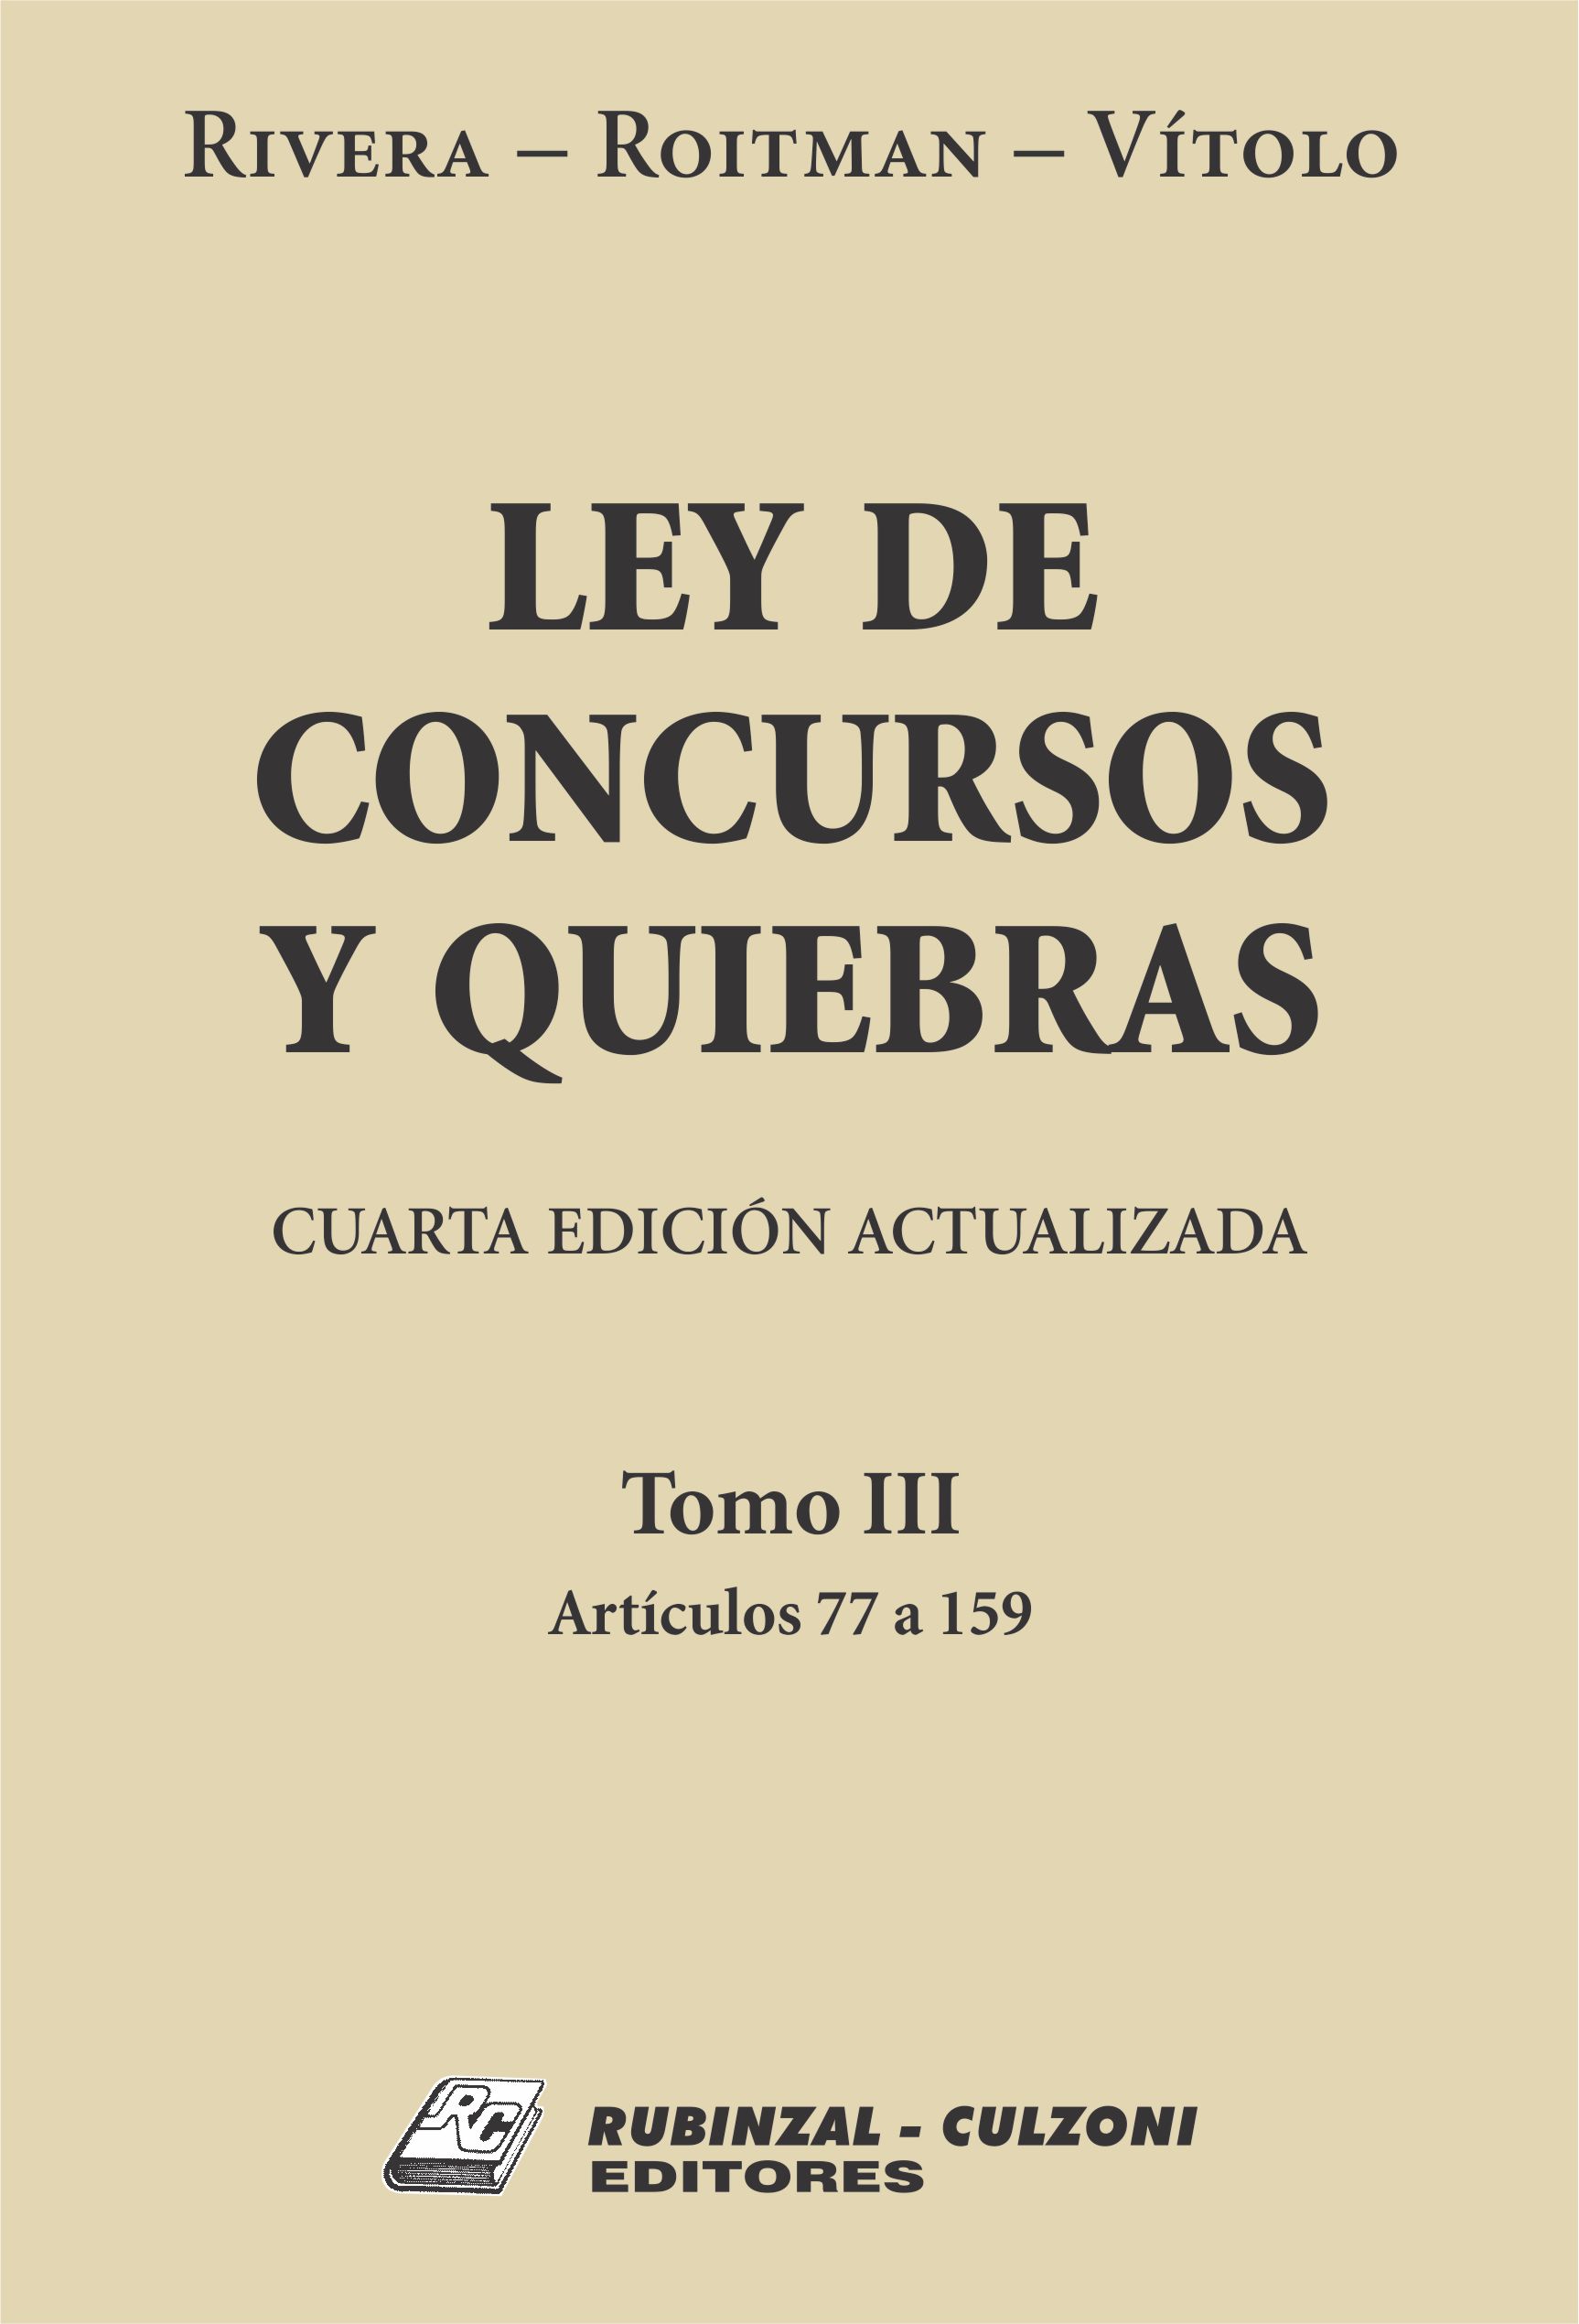 Ley de Concursos y Quiebras. - Tomo III (Artículos 77 a 159). 4ª Edición actualizada.